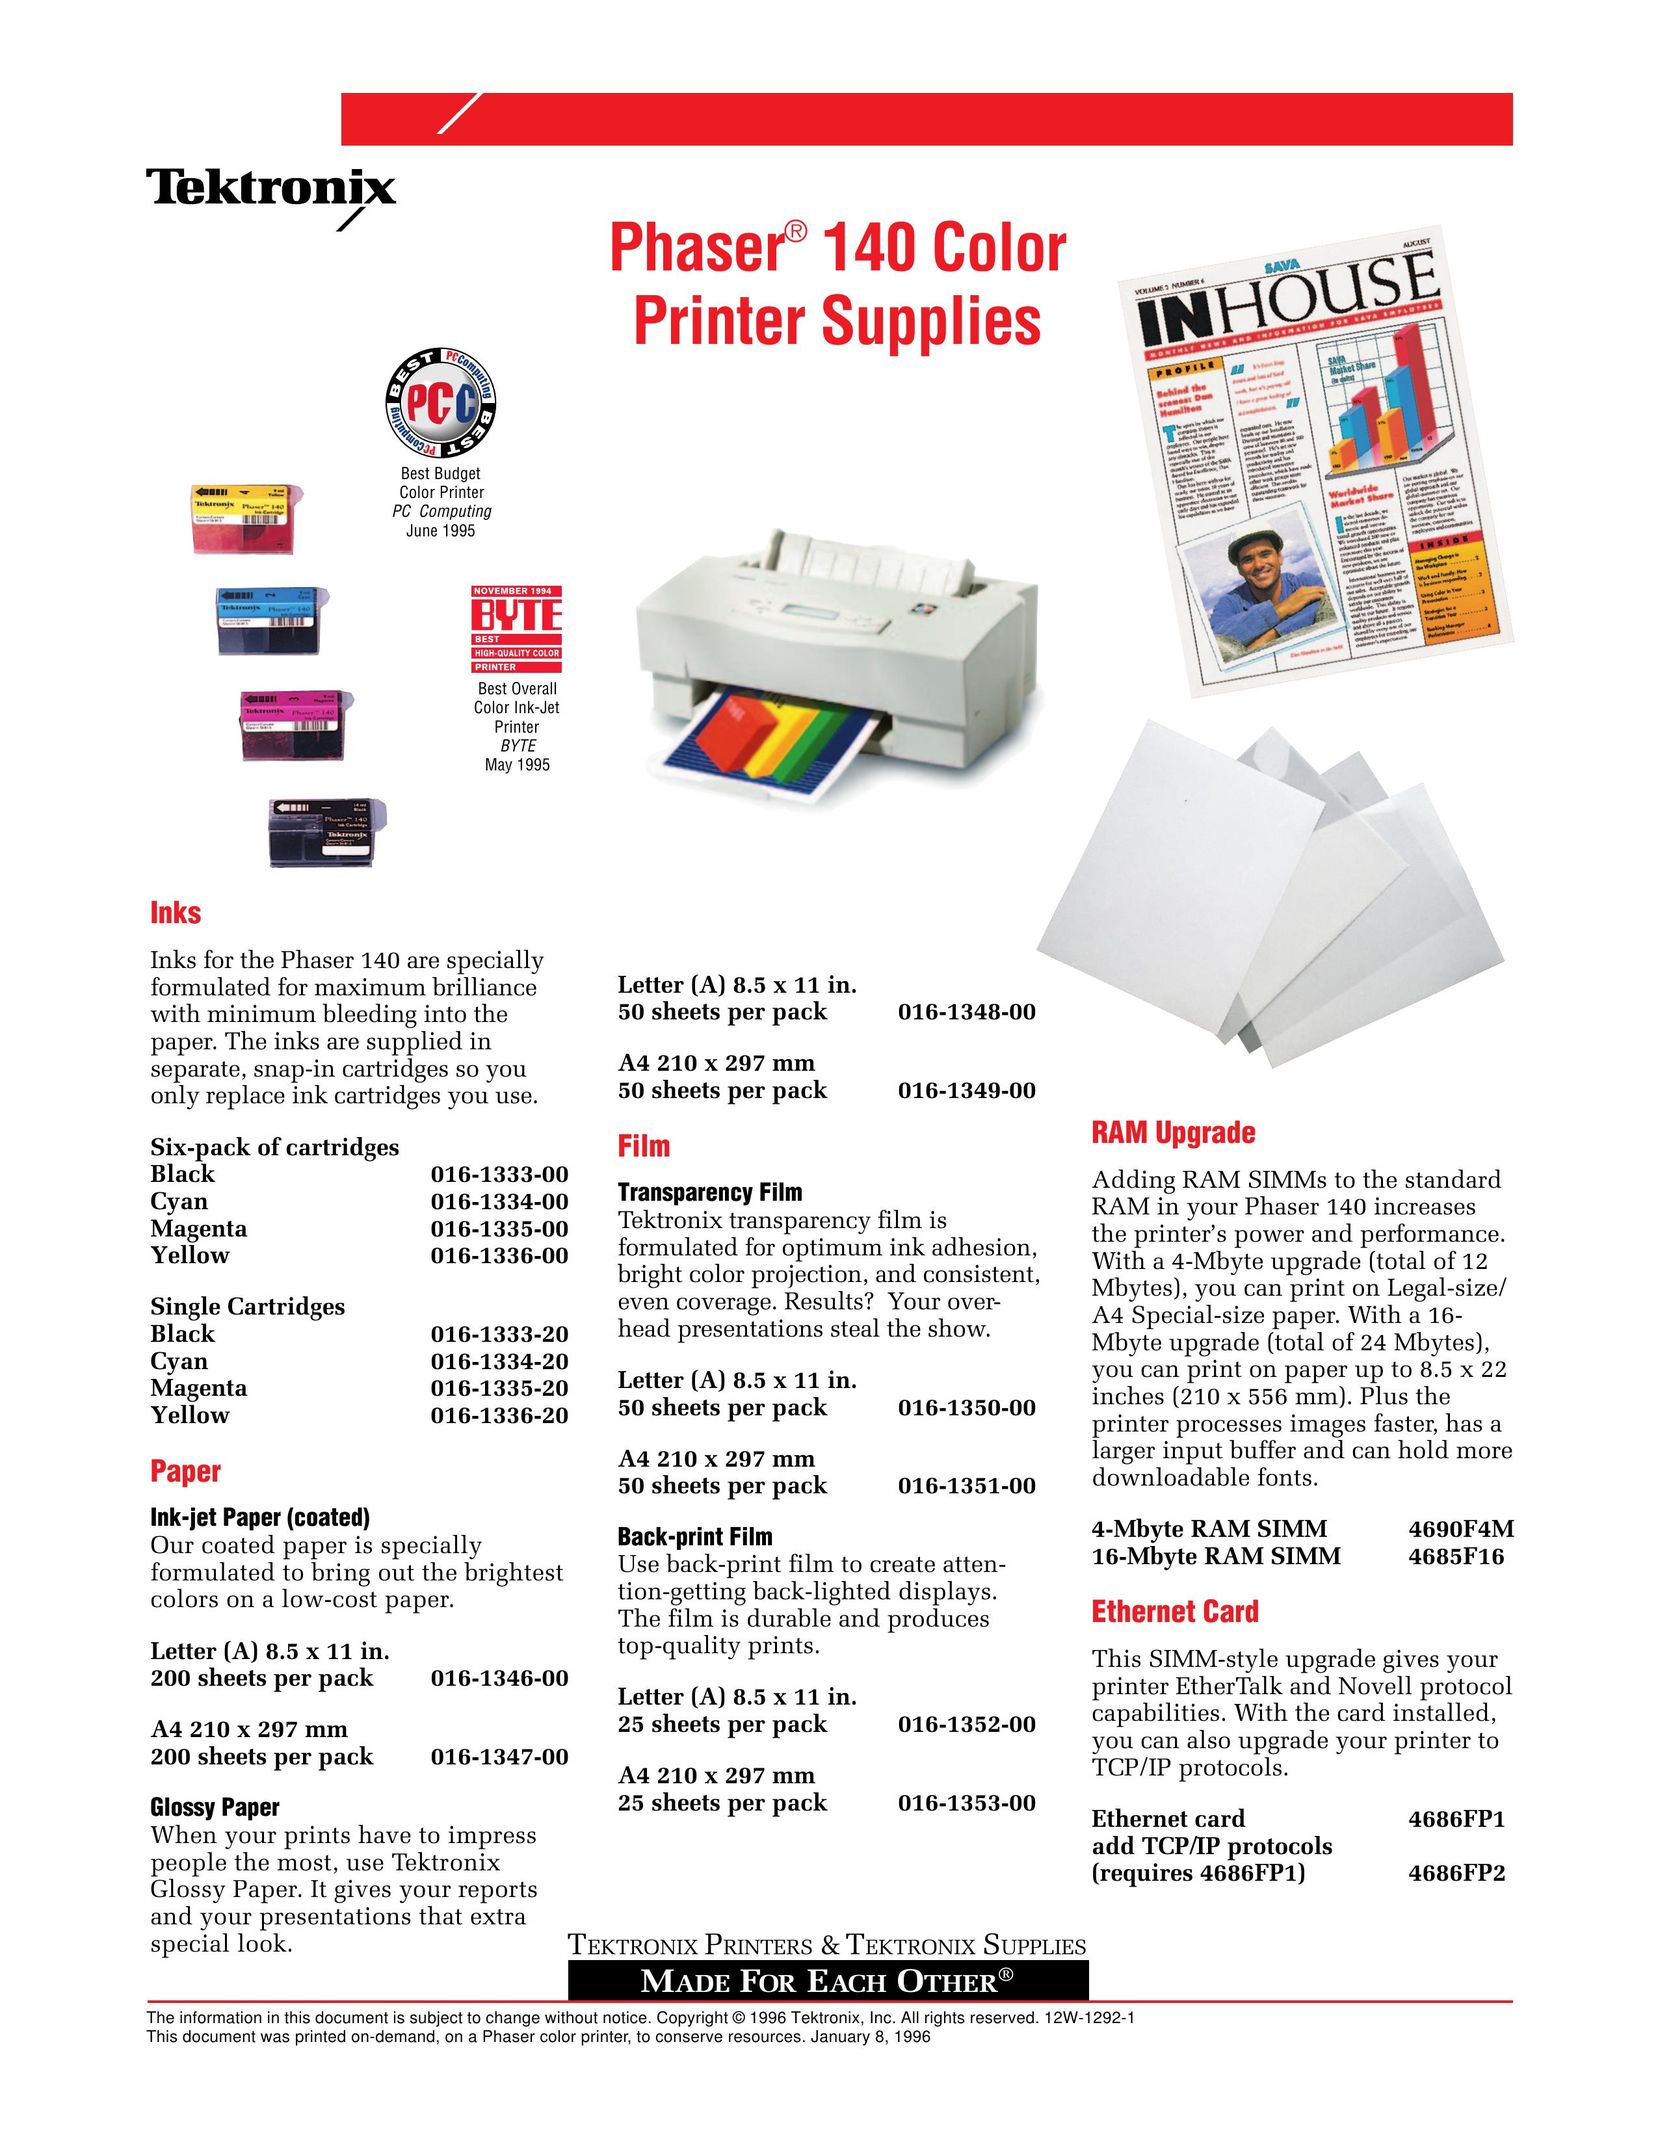 Tektronix 016-1350-00 Printer User Manual